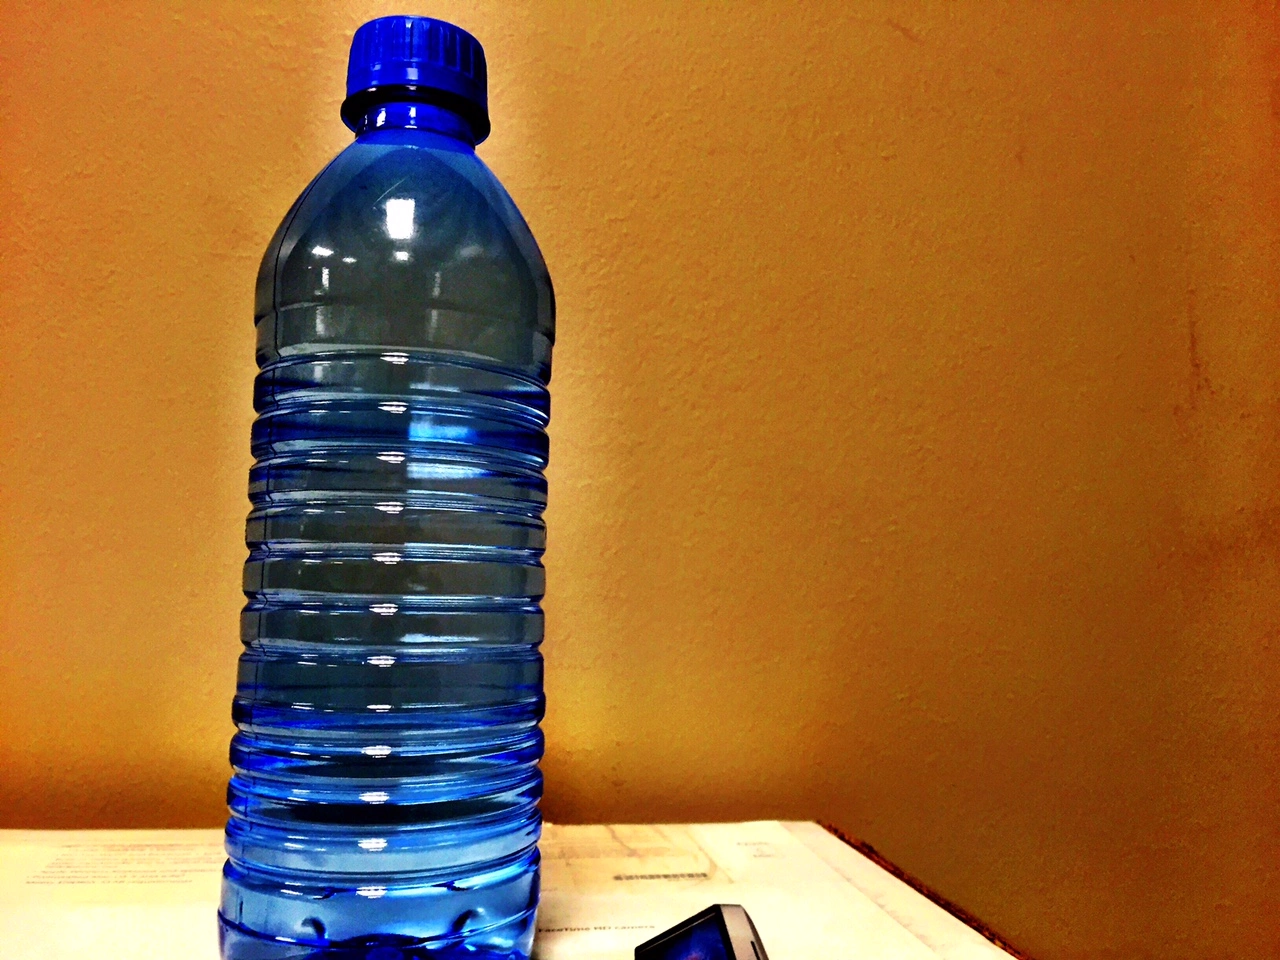 Las botellas de plástico expuestas al calor extremo podrían ser  perjudiciales para la salud